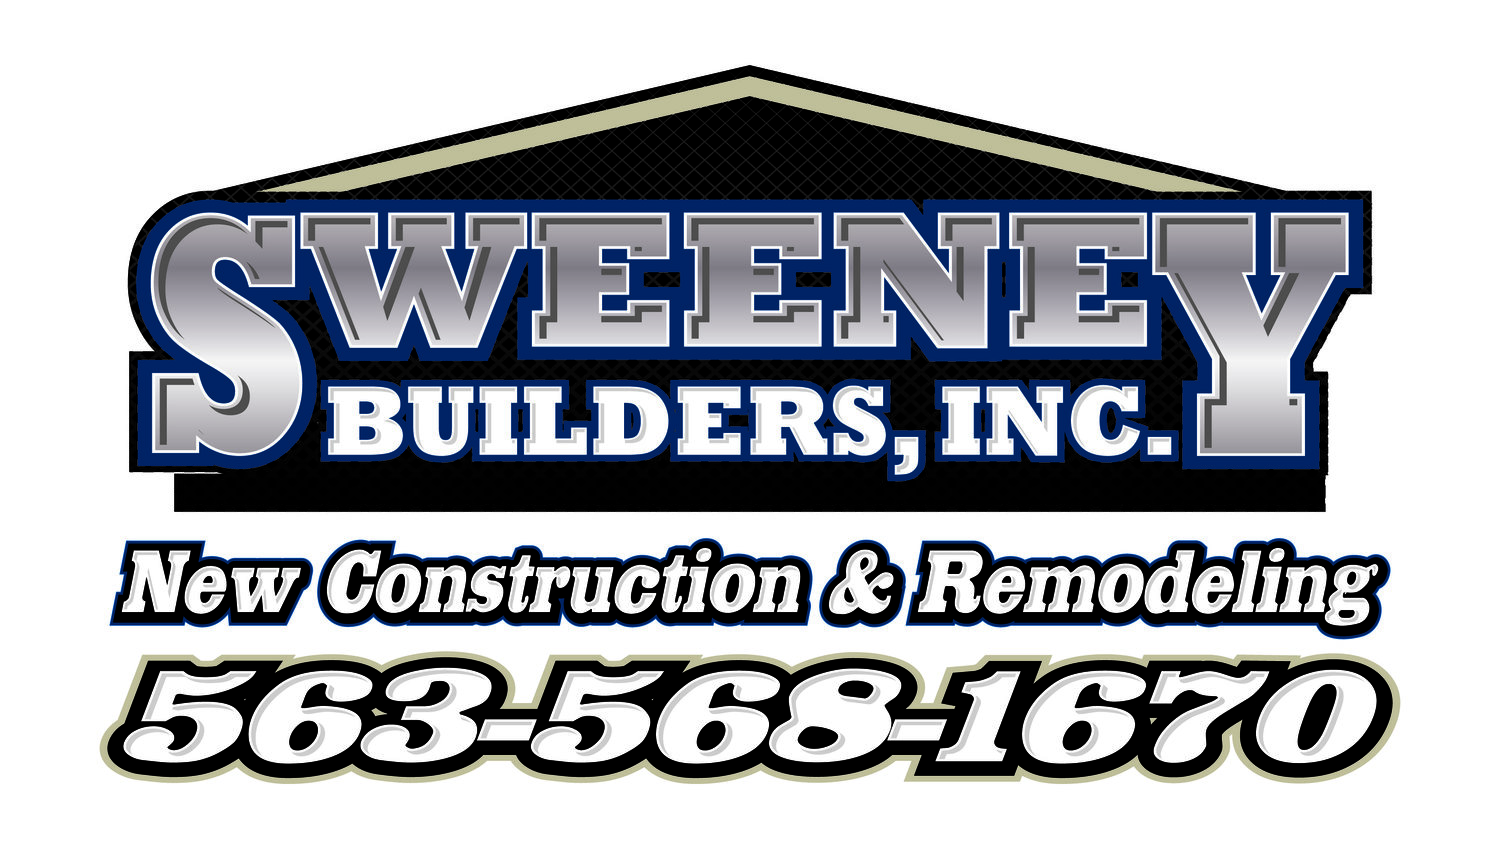 Sweeney Builders Inc.